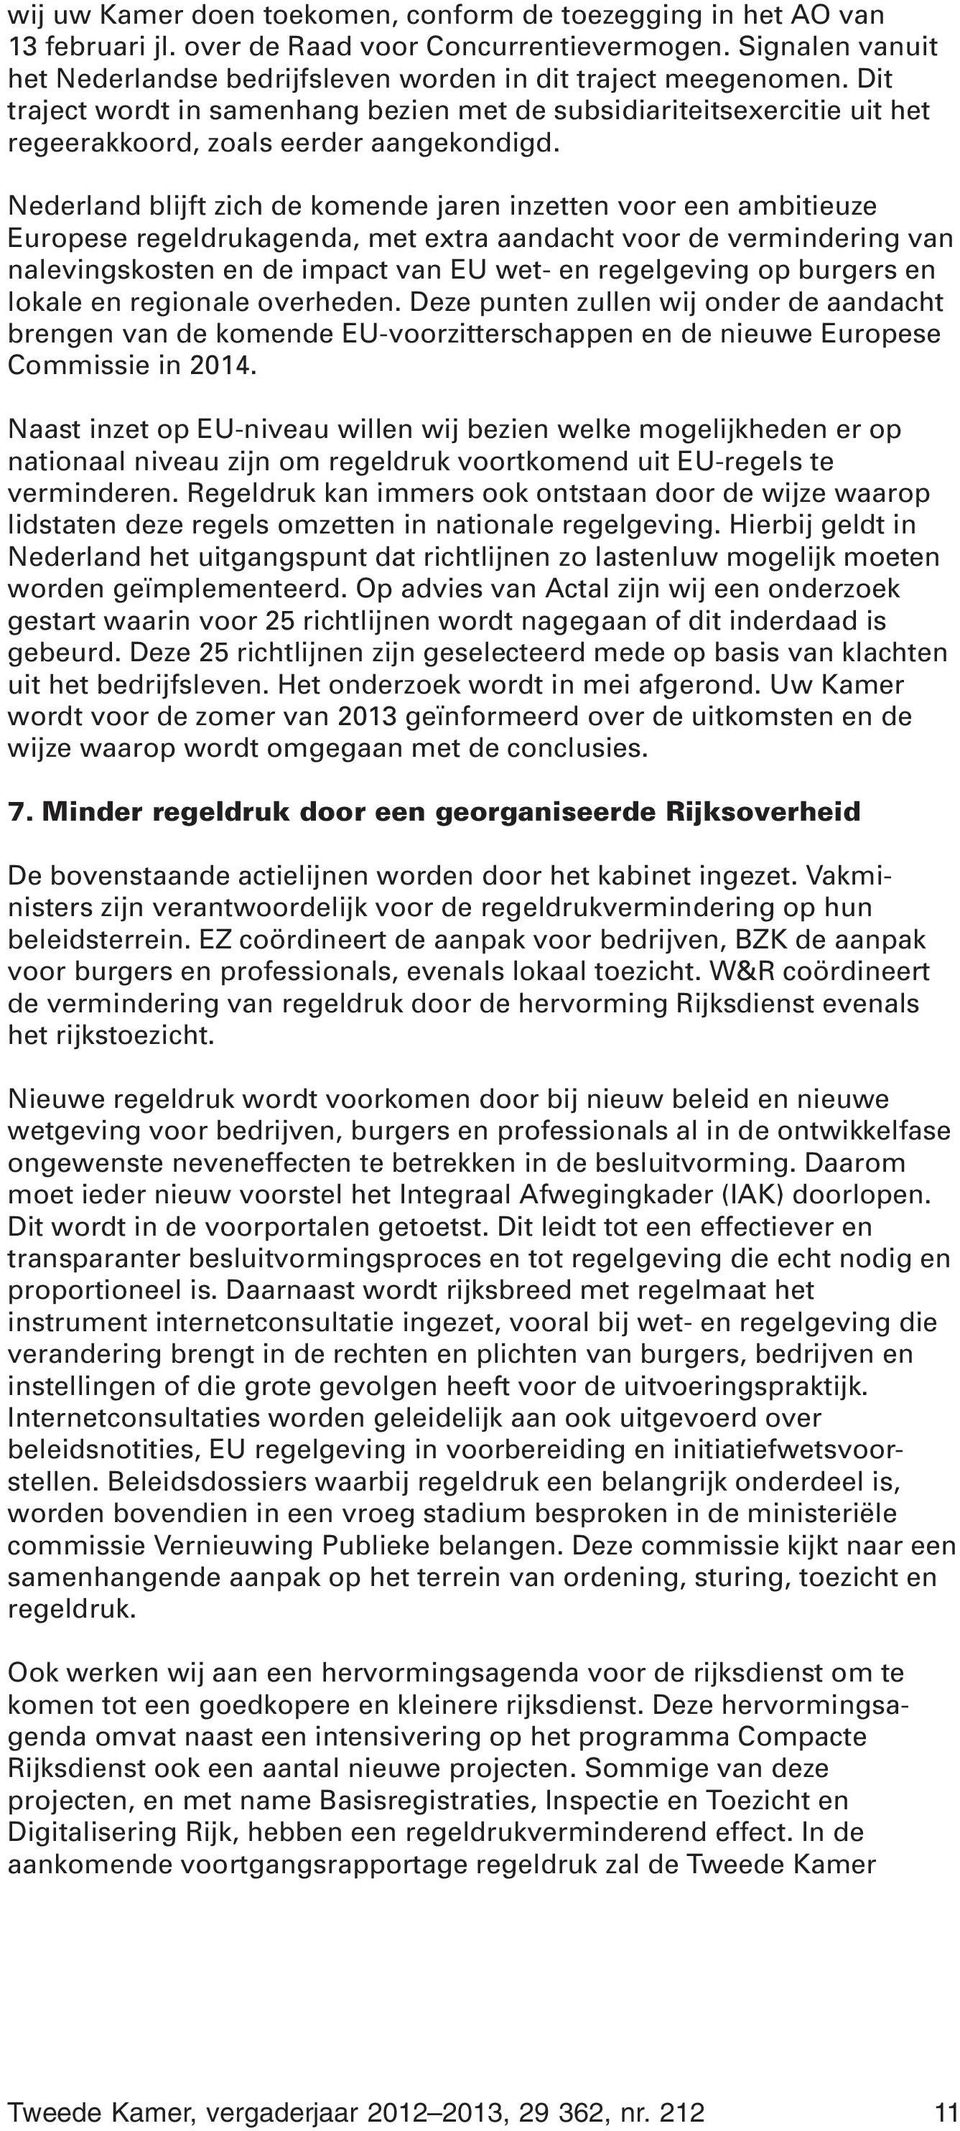 Nederland blijft zich de komende jaren inzetten voor een ambitieuze Europese regeldrukagenda, met extra aandacht voor de vermindering van nalevingskosten en de impact van EU wet- en regelgeving op